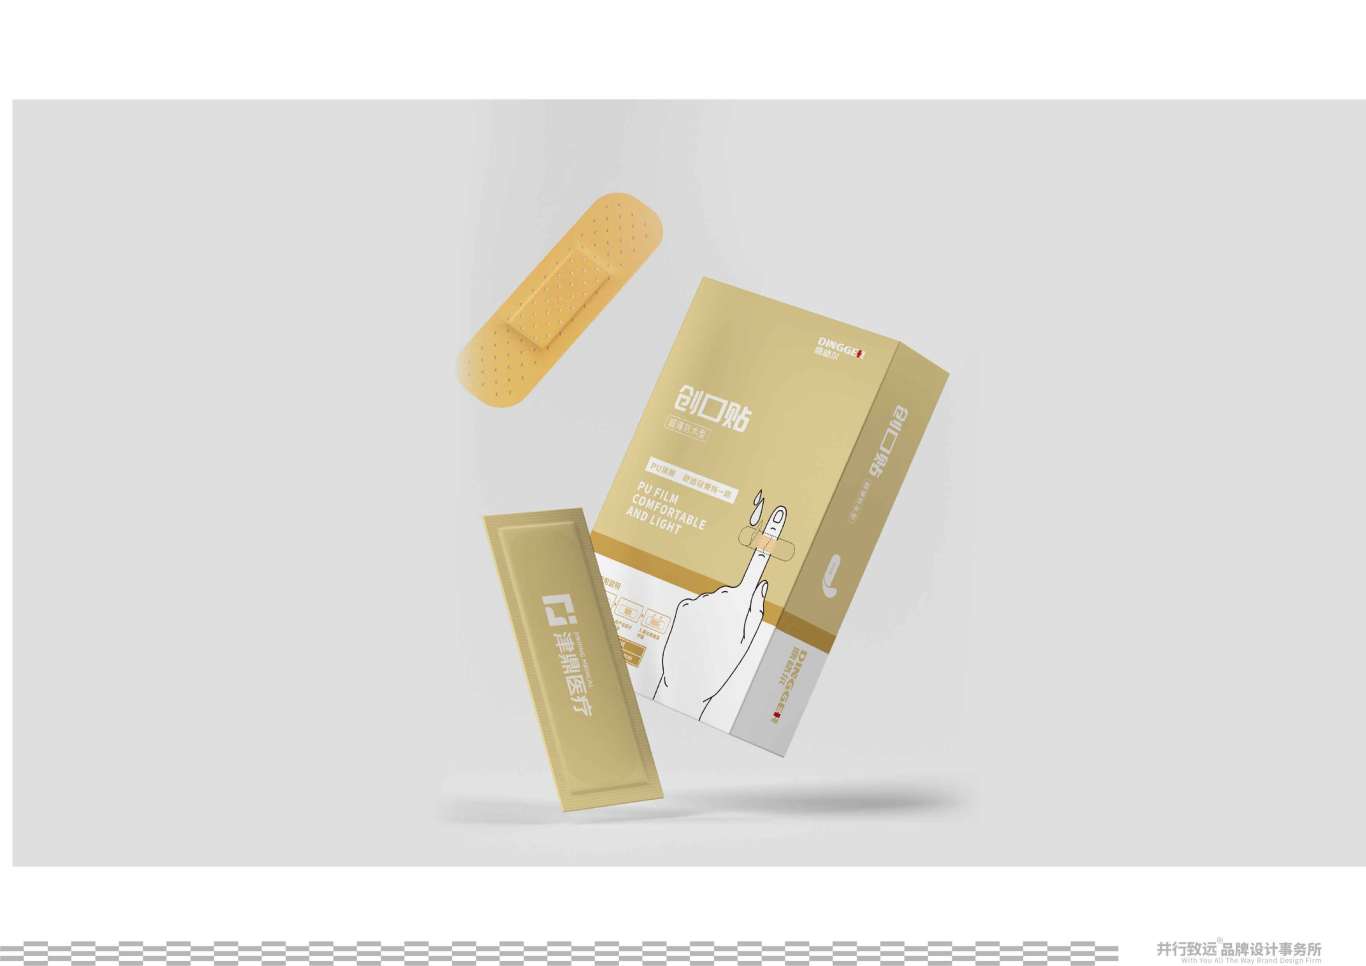 鼎格爾品牌創口貼系列包裝設計圖2